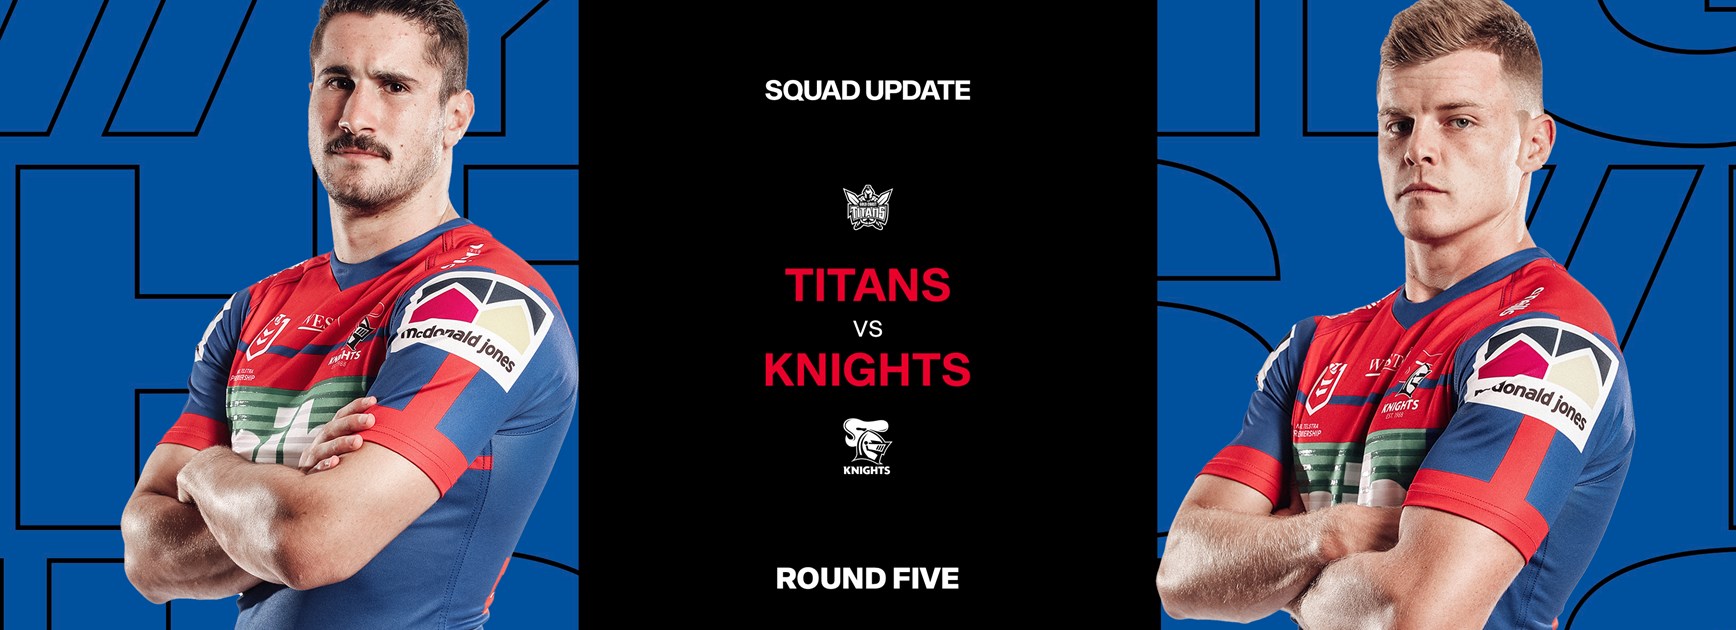 Squad Update: Round 5 v Titans